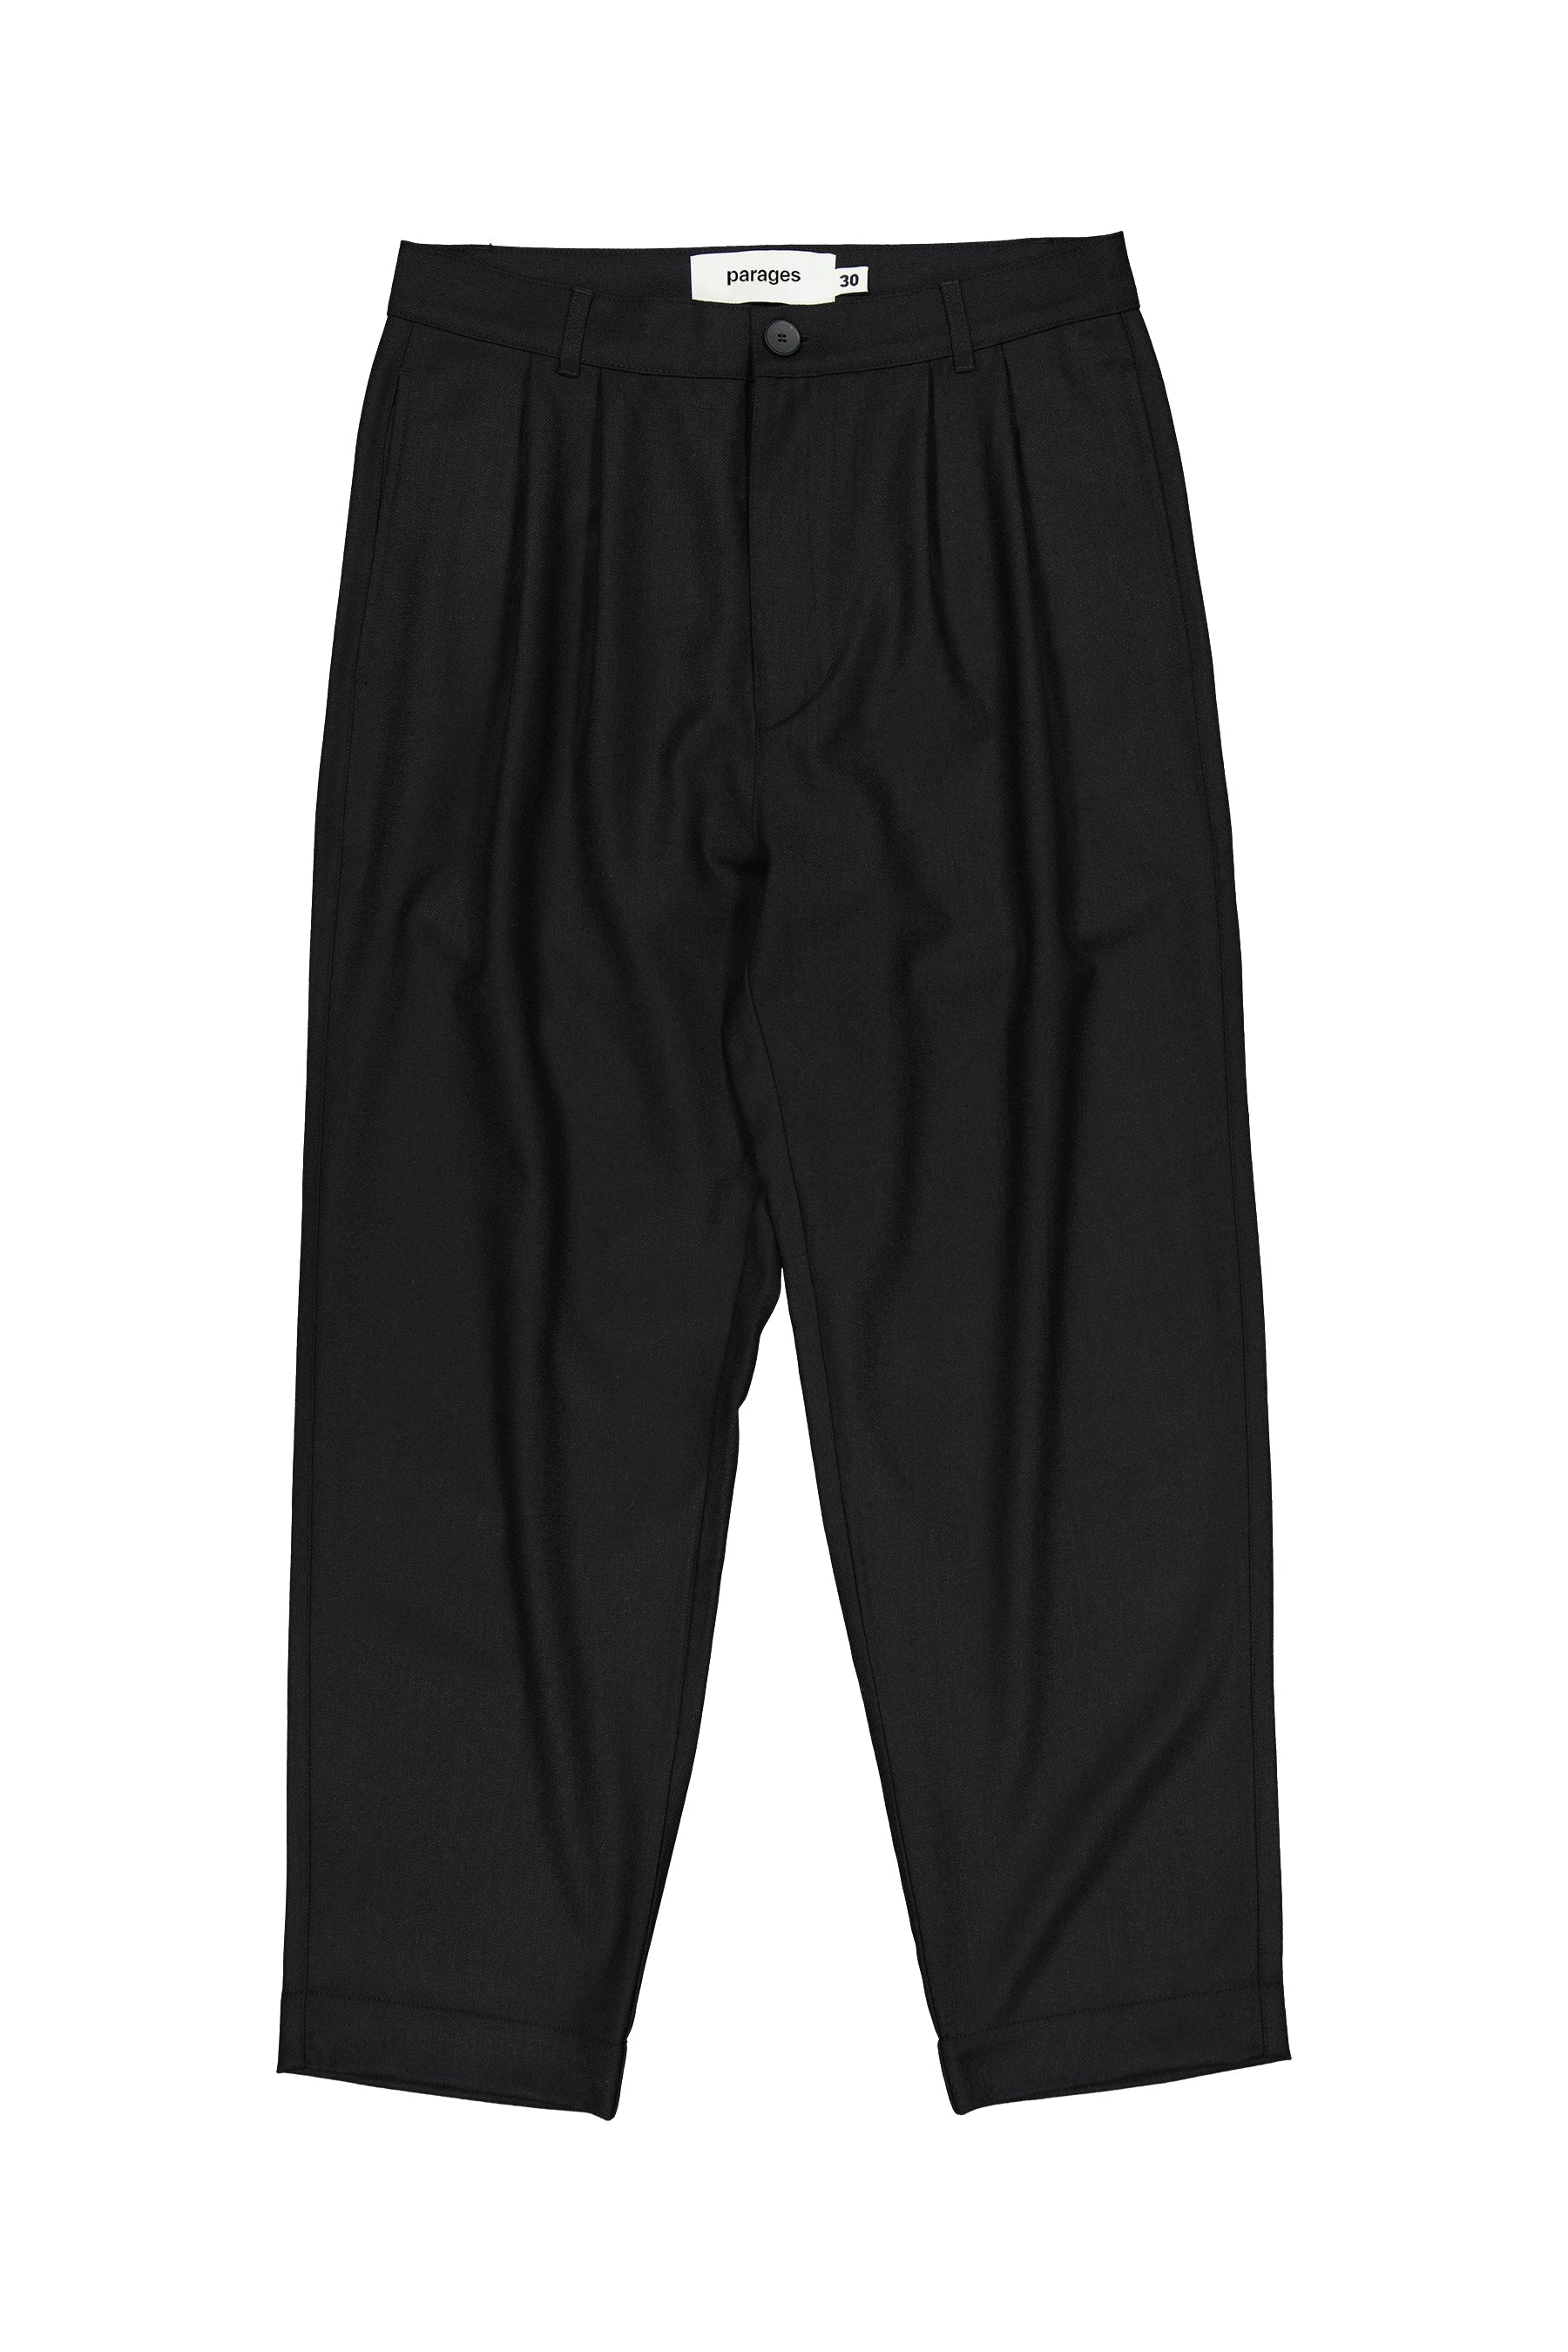 double-pleats-wool-pantalon-laine-noir